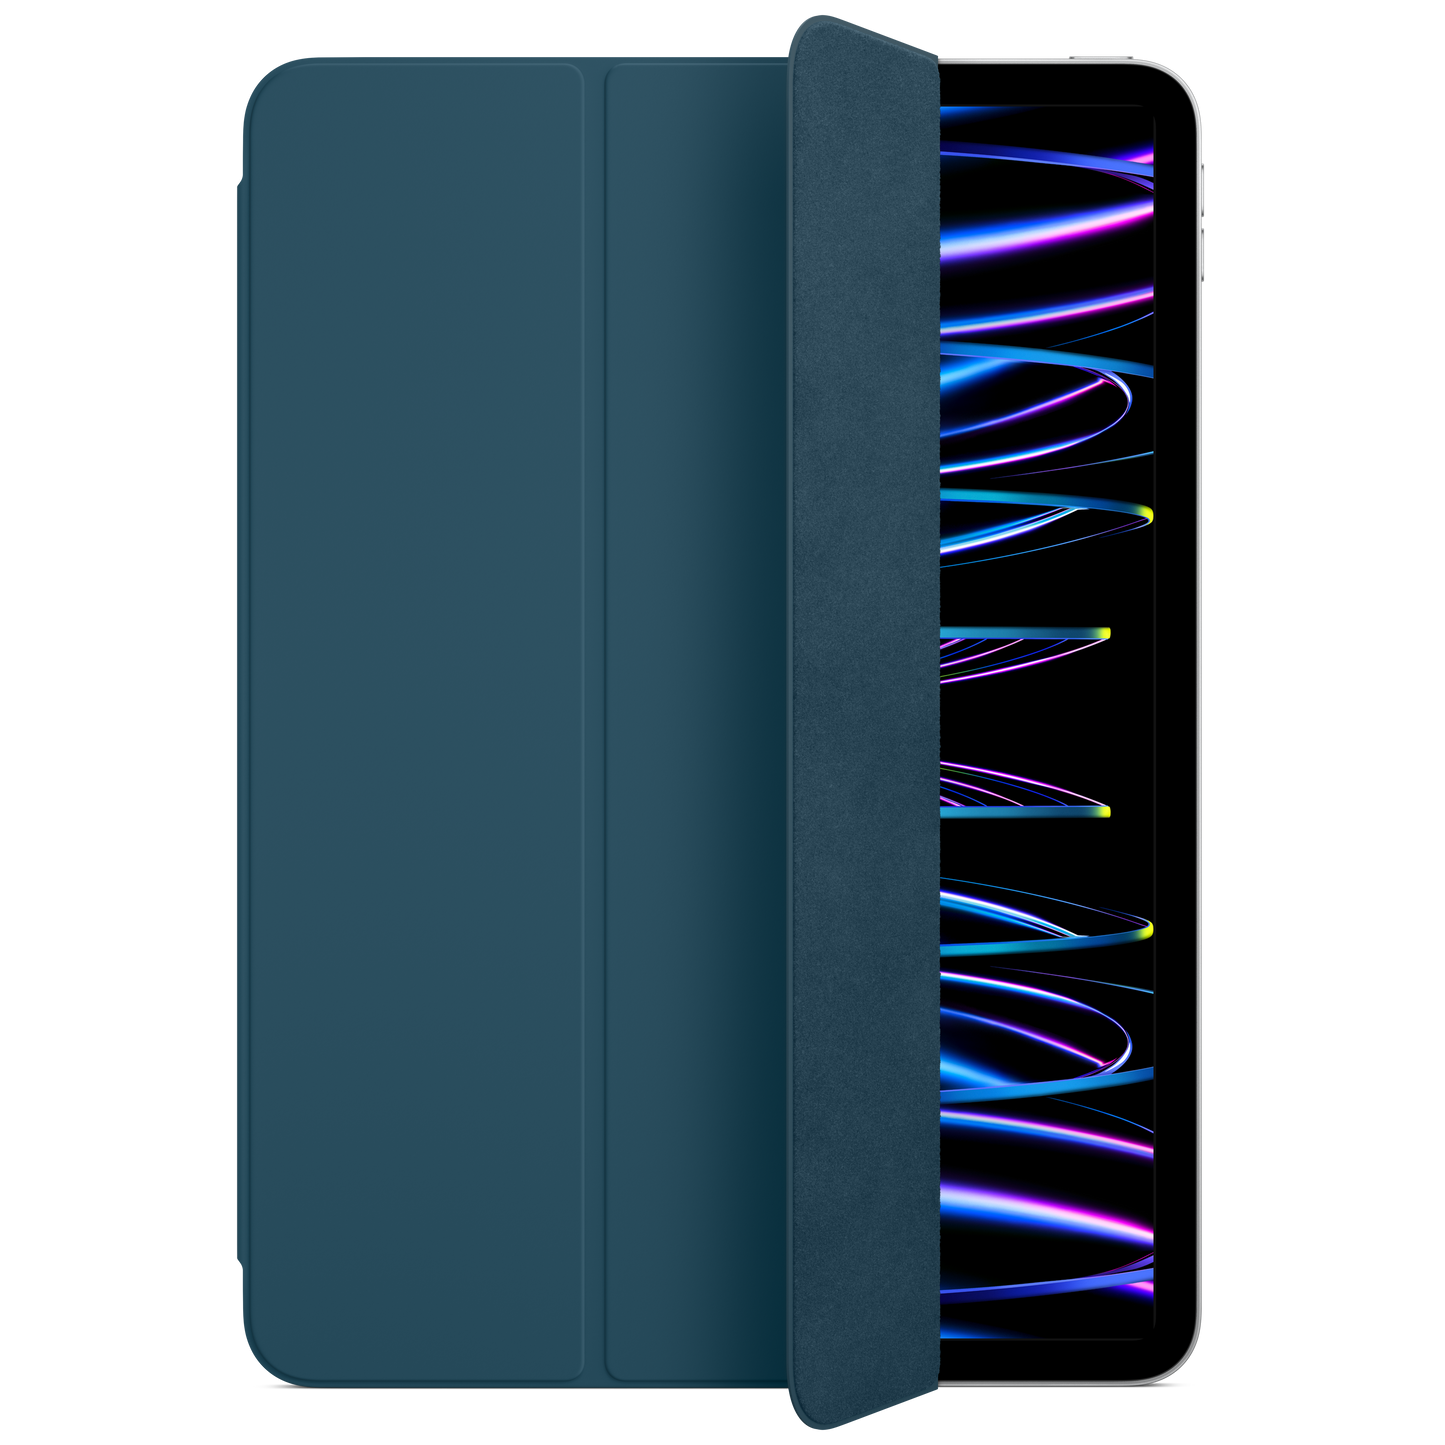 Funda Smart Folio para el iPad Pro de 11 pulgadas (4.ª generación) - Azul mar - Rossellimac